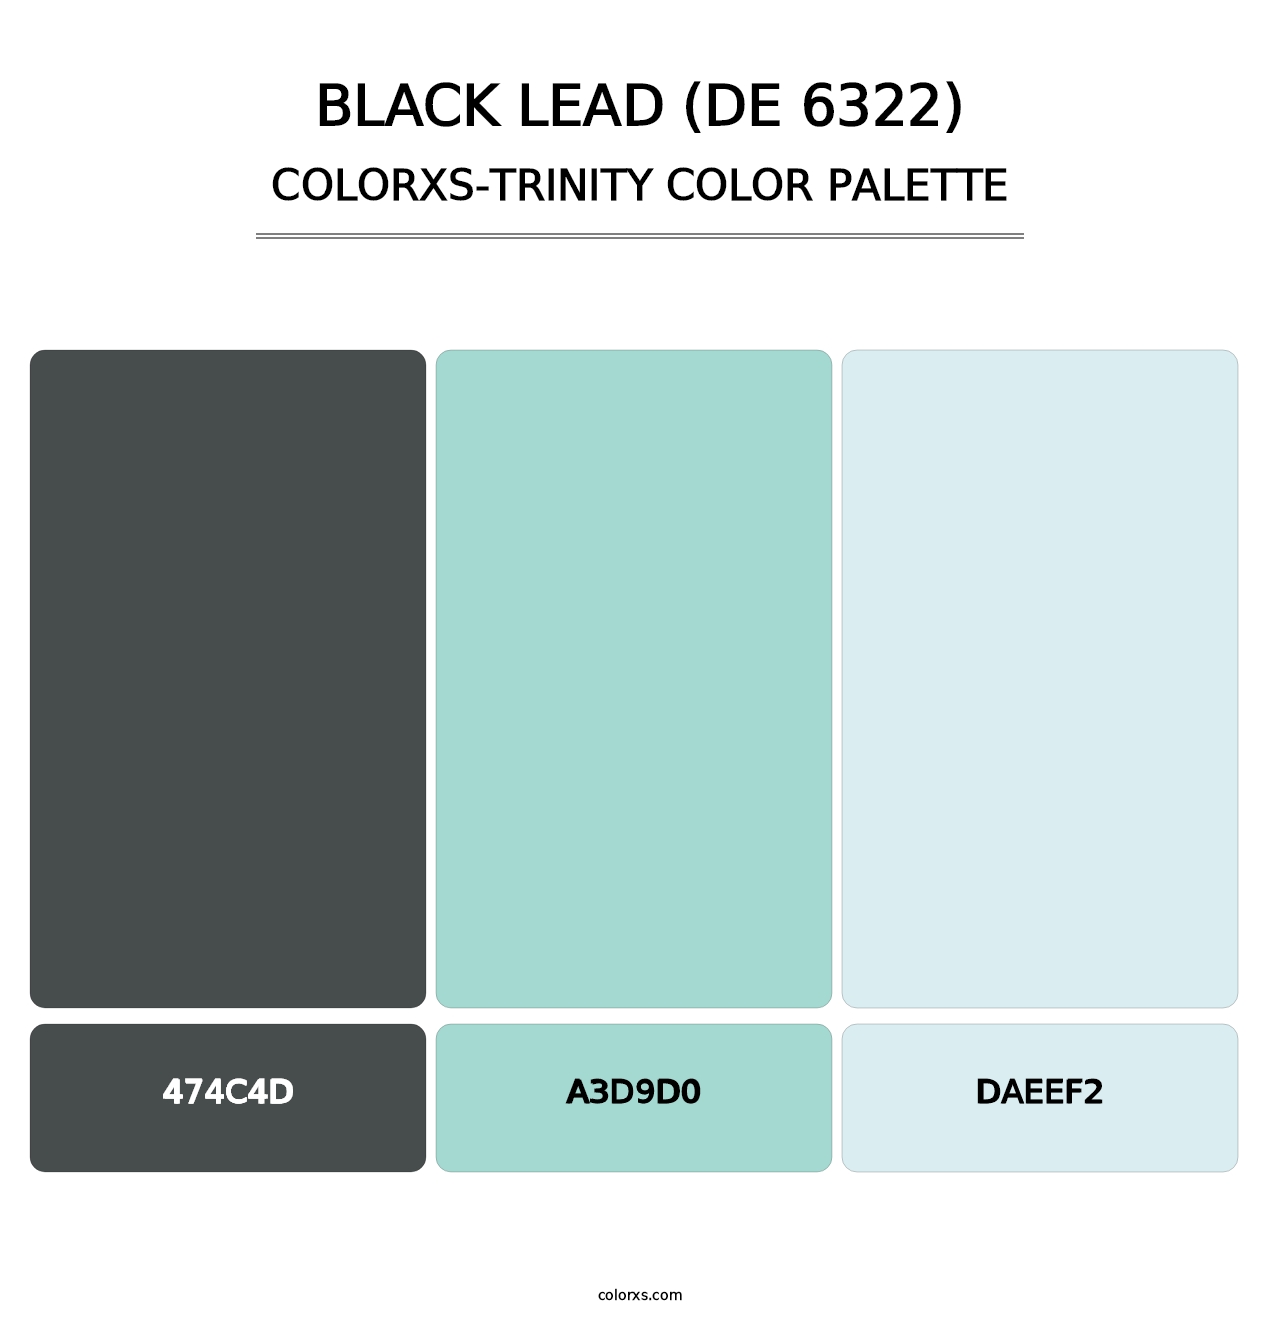 Black Lead (DE 6322) - Colorxs Trinity Palette